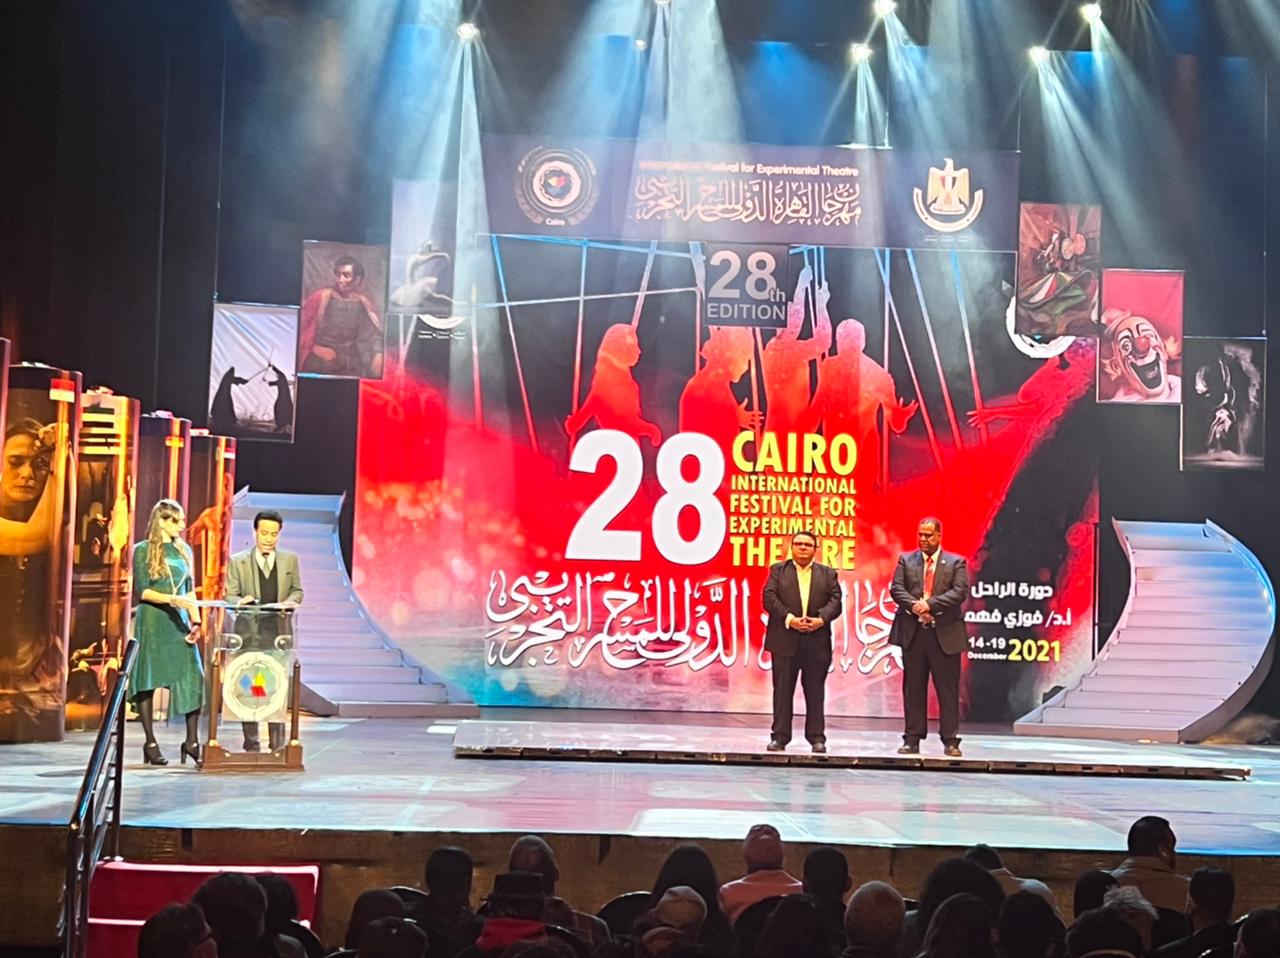 مهرجان القاهرة الدولي للمسرح التجريبي يكرم ستة رموز مسرحية من مصر والدول العربية والأجنبية خلال حفل ختامه (3)